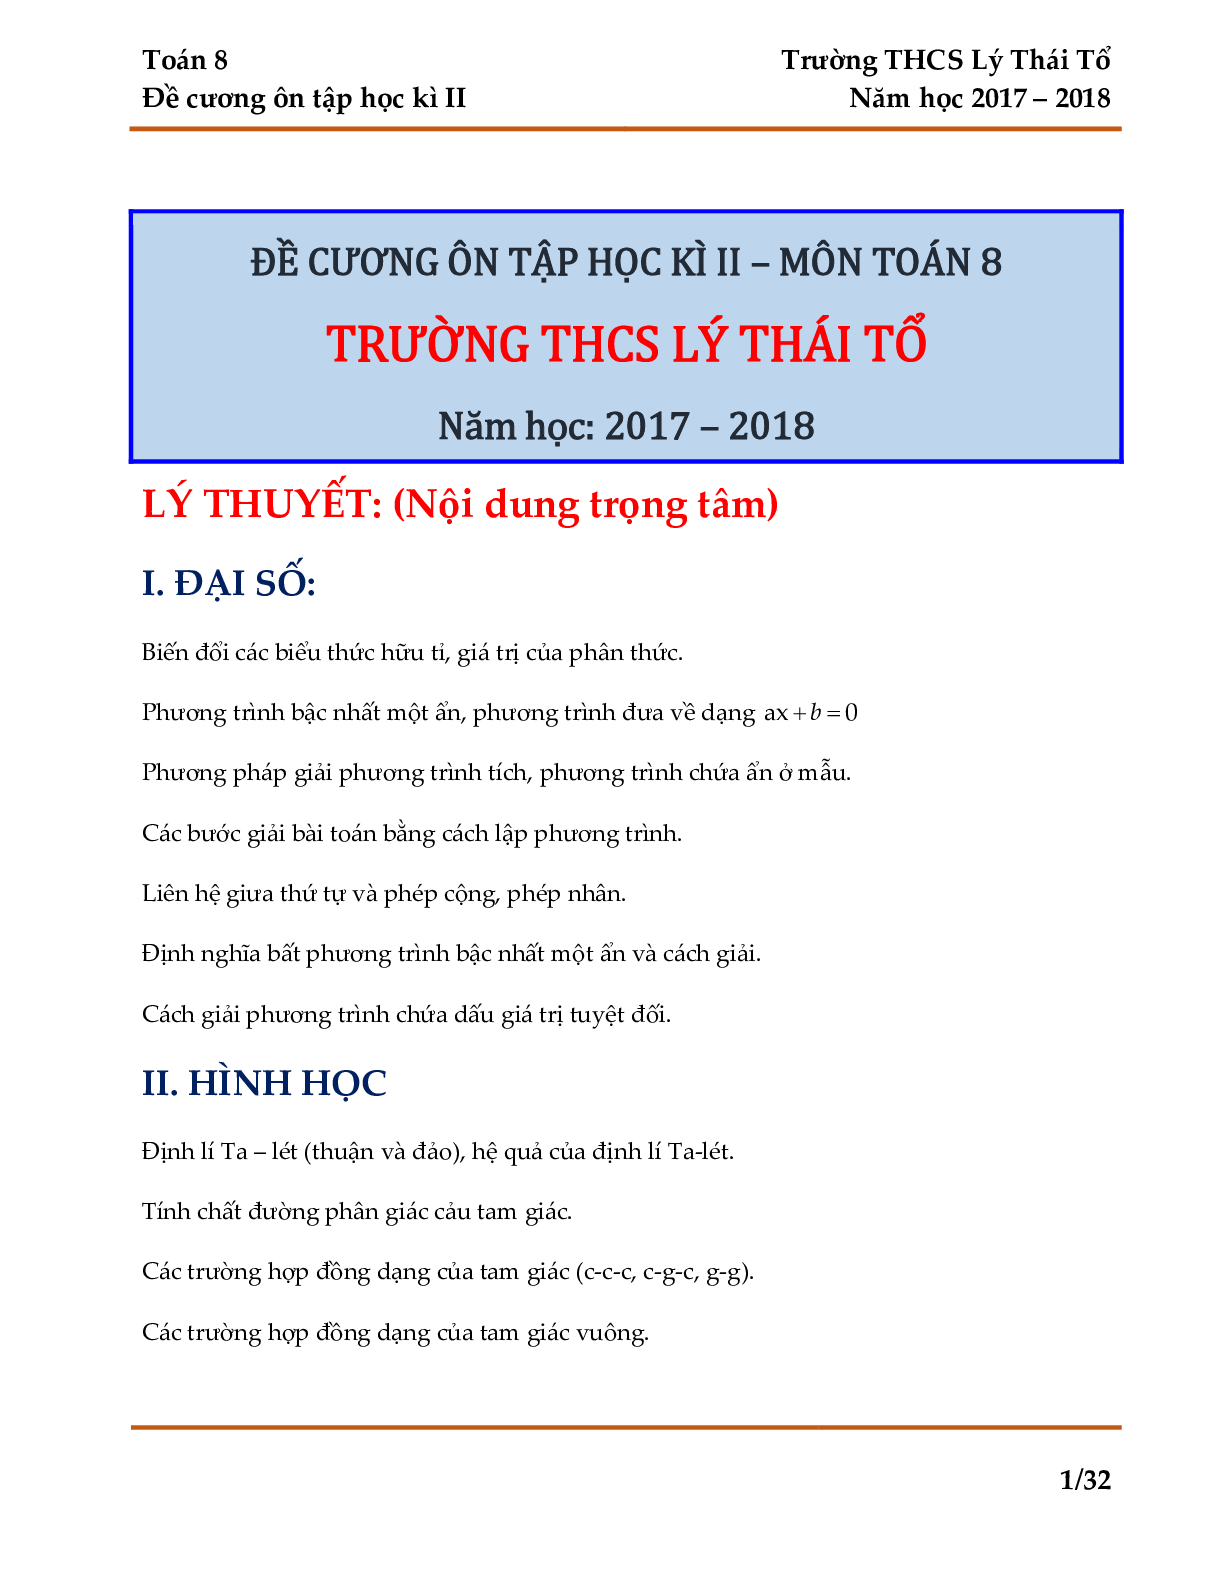 Đề cương ôn tập học kỳ II môn toán 8 năm học 2017-2018 THCS Lý Thái Tổ - Hà Nội (trang 1)